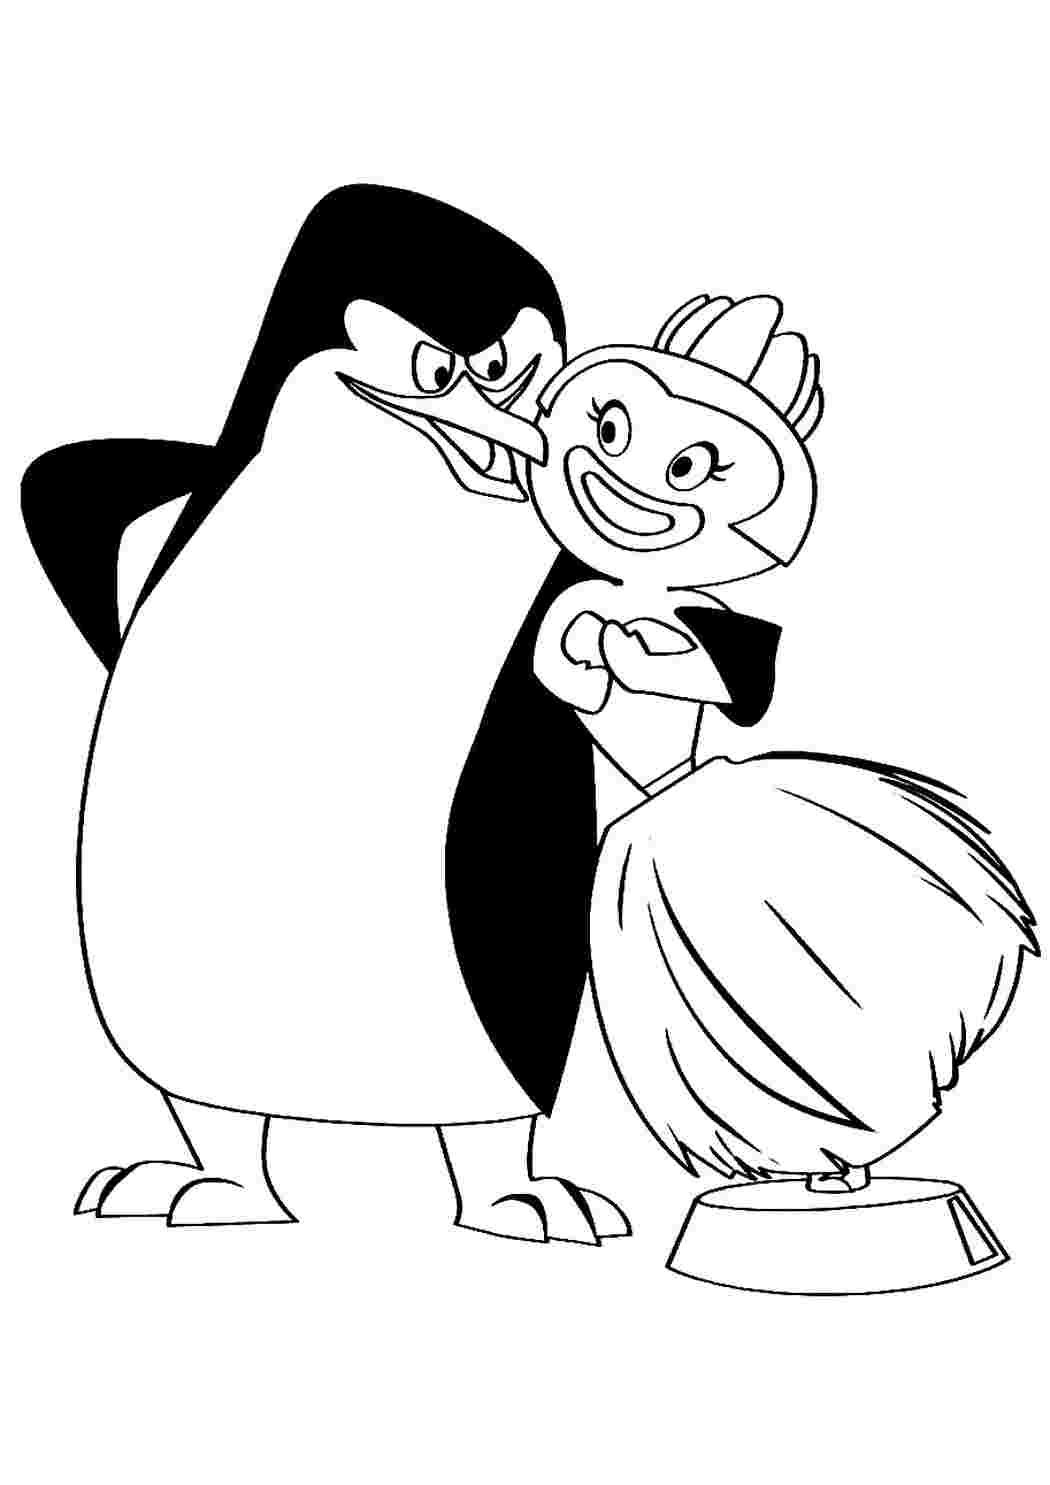 Фото по запросу Рисунок изображением маленького пингвина